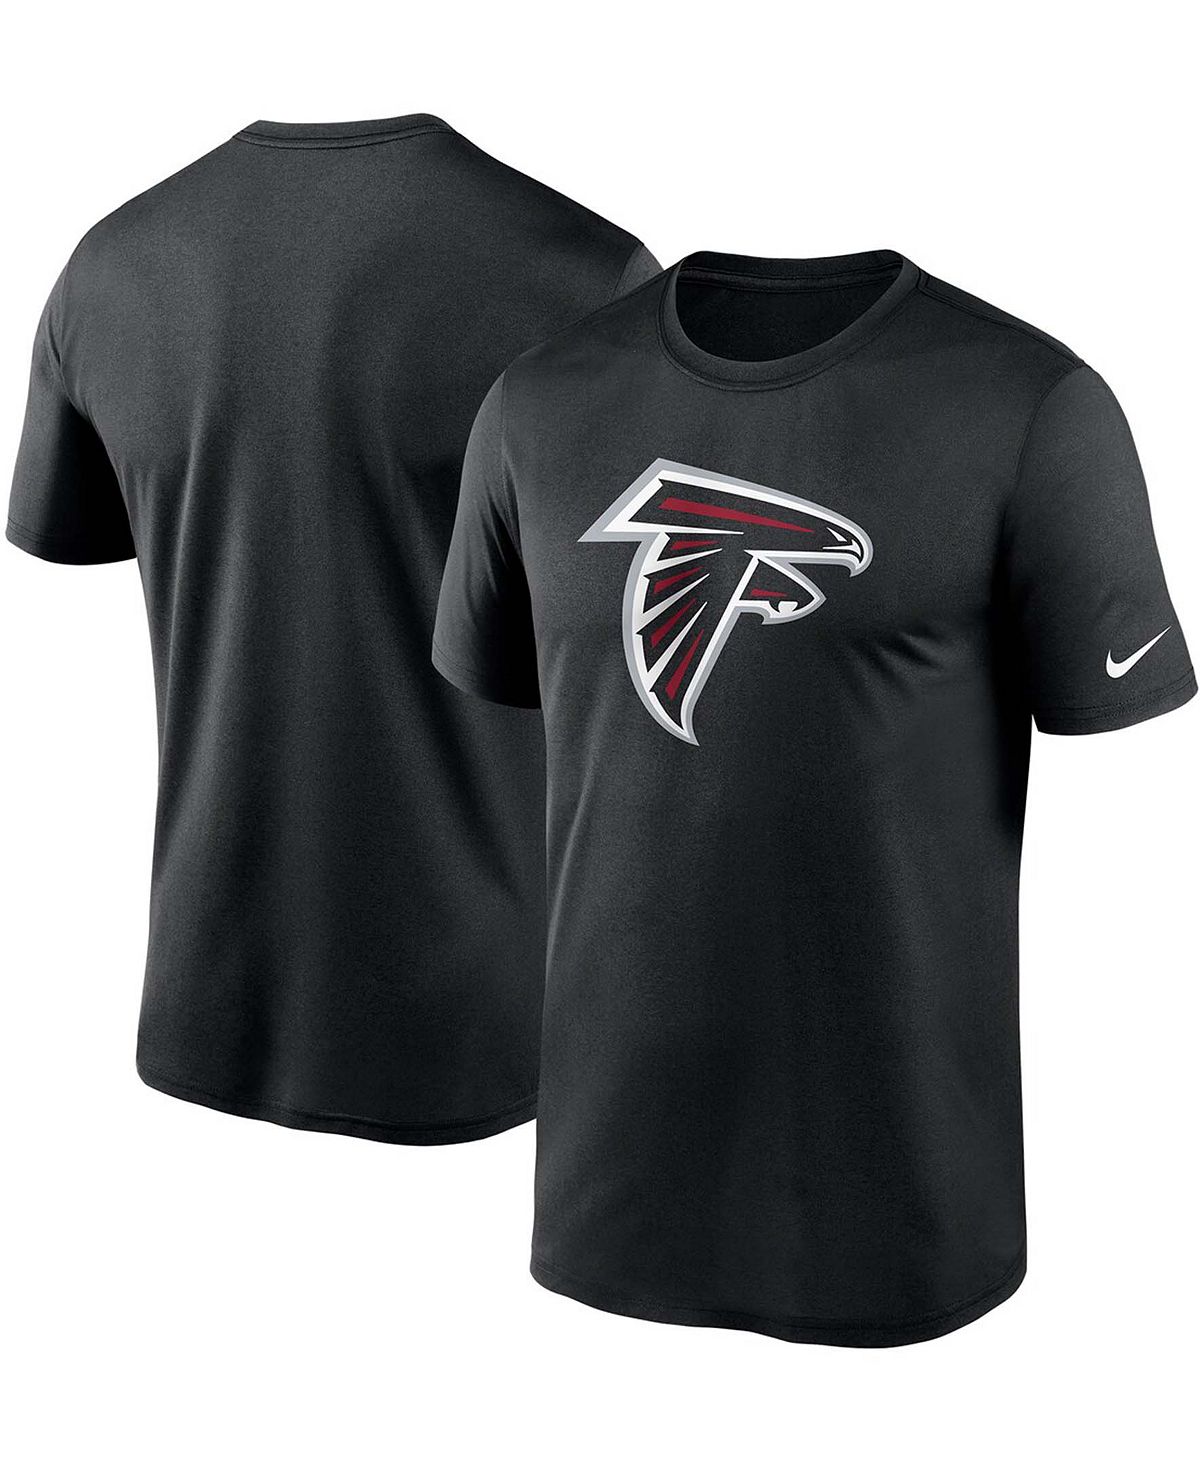 Мужская черная футболка с логотипом Big and Tall Atlanta Falcons Essential Legend Performance Nike